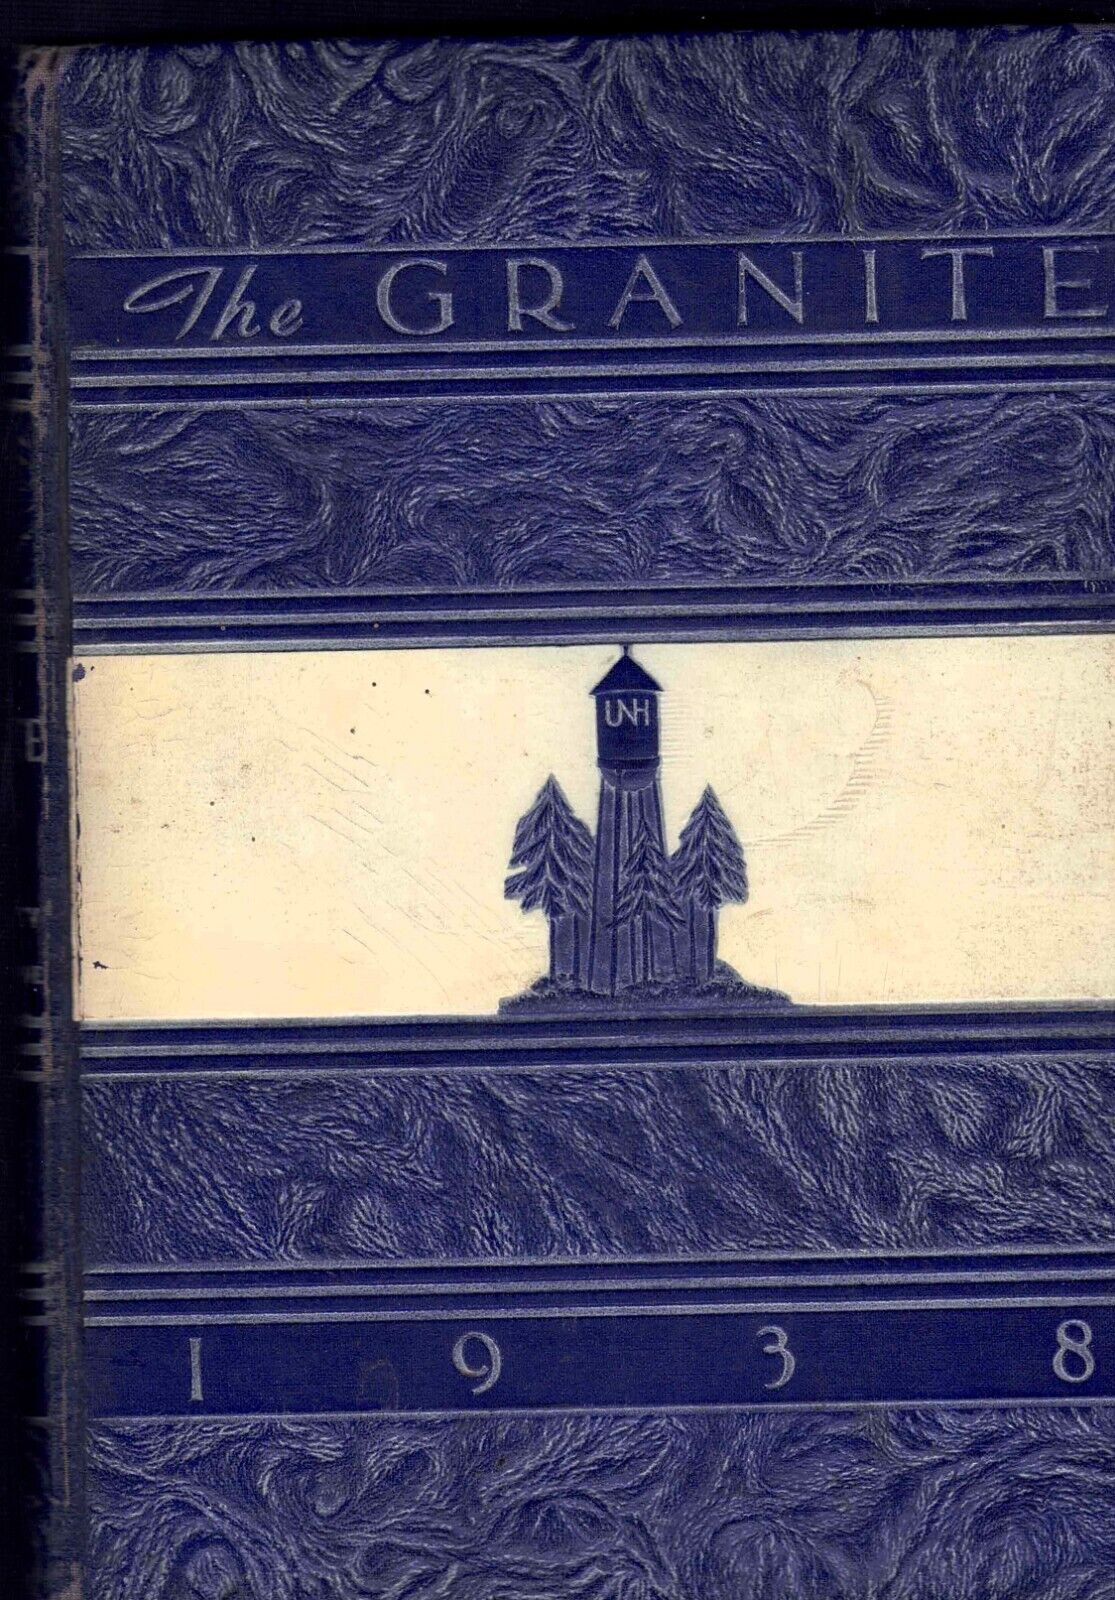 1938 University of New Hampshire Yearbook, Granite, Durham, New Hampshire